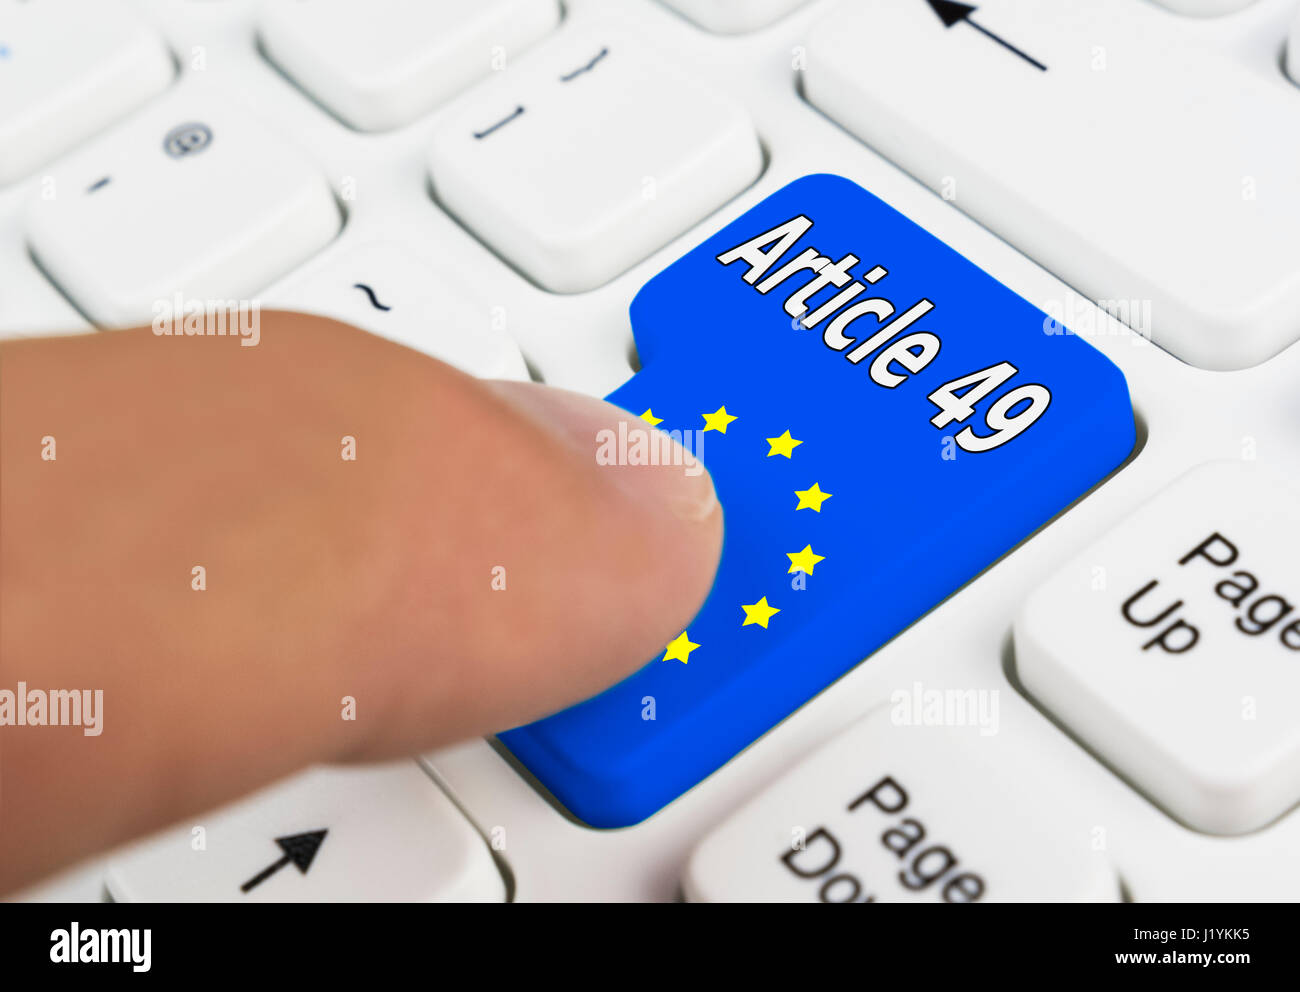 Dedo presionando un botón para invocar el Artículo 49 El artículo 49 del Tratado de Lisboa para entrar en la UE. Foto de stock